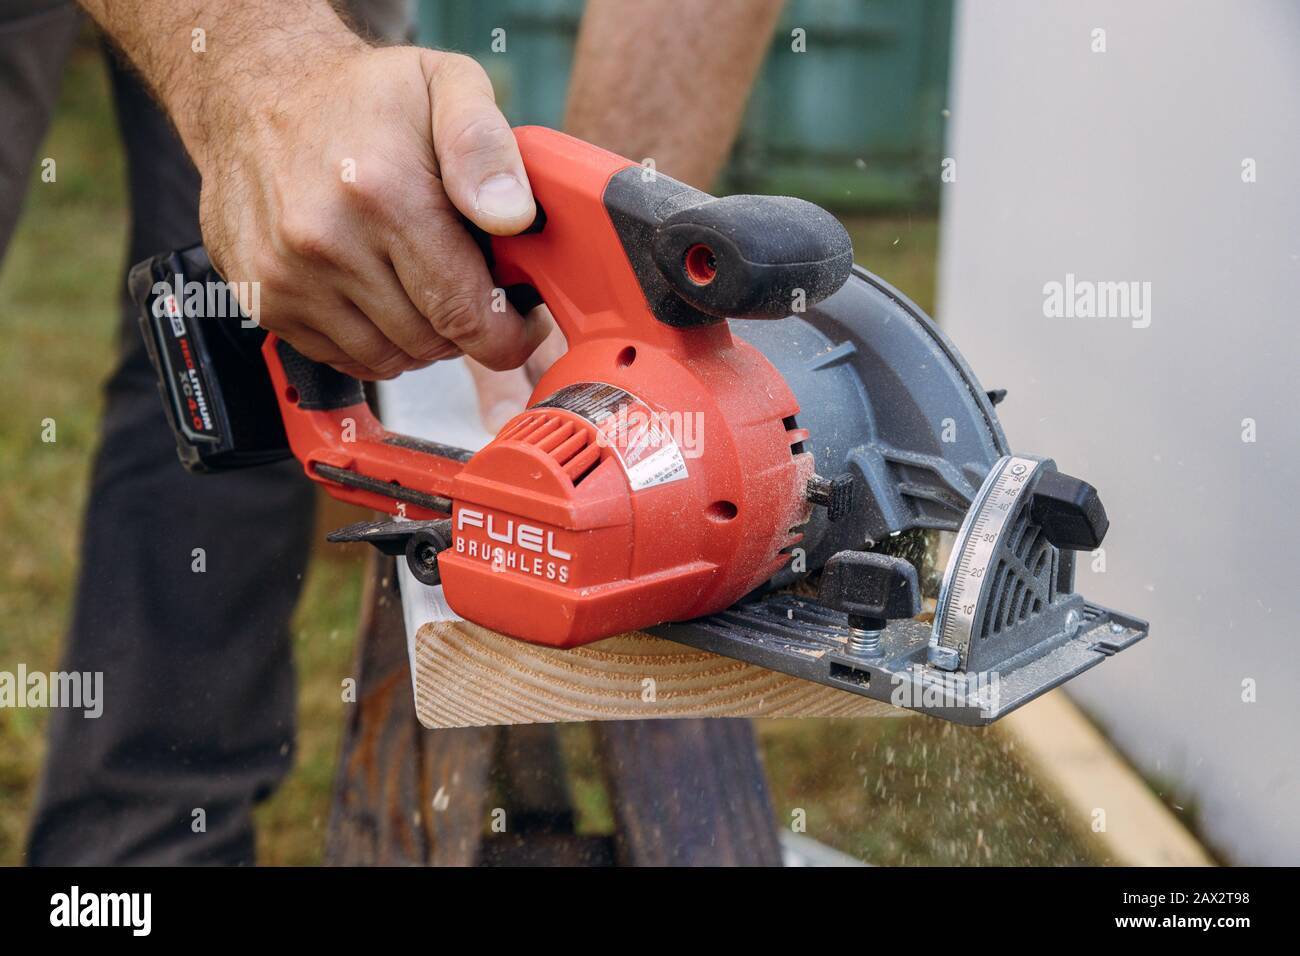 10 de febrero de 2020 Chicago IL: Milwaukee herramientas eléctricas  Carpenter corte madera tablón de mano sierra eléctrica Fotografía de stock  - Alamy